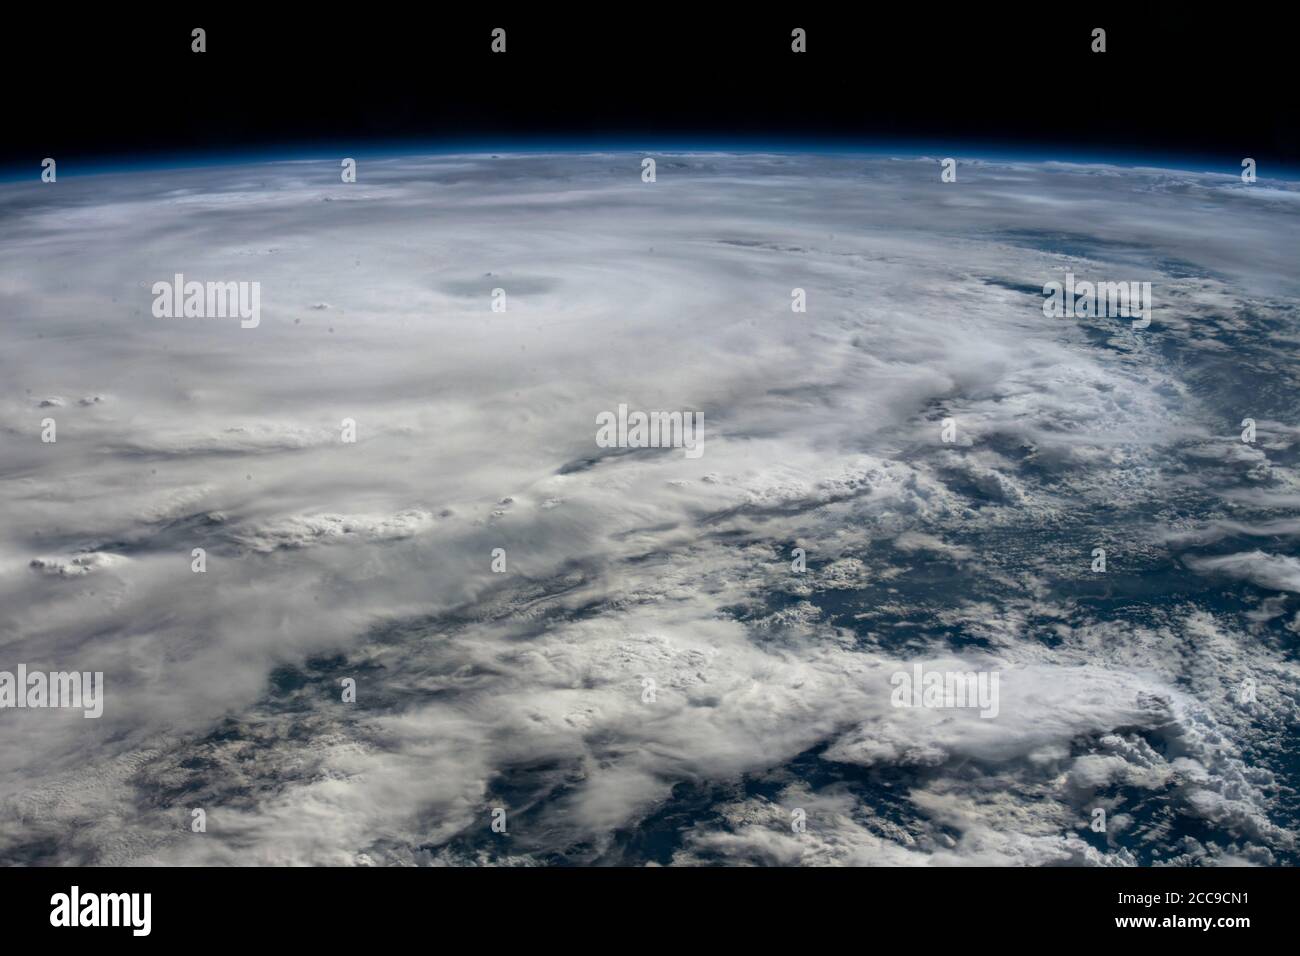 TEXAS, USA - 25. Juli 2020 - Hurrikan Hanna trifft die Südküste von Texas von der Internationalen Raumstation am 25. Juli 2020 - P Stockfoto